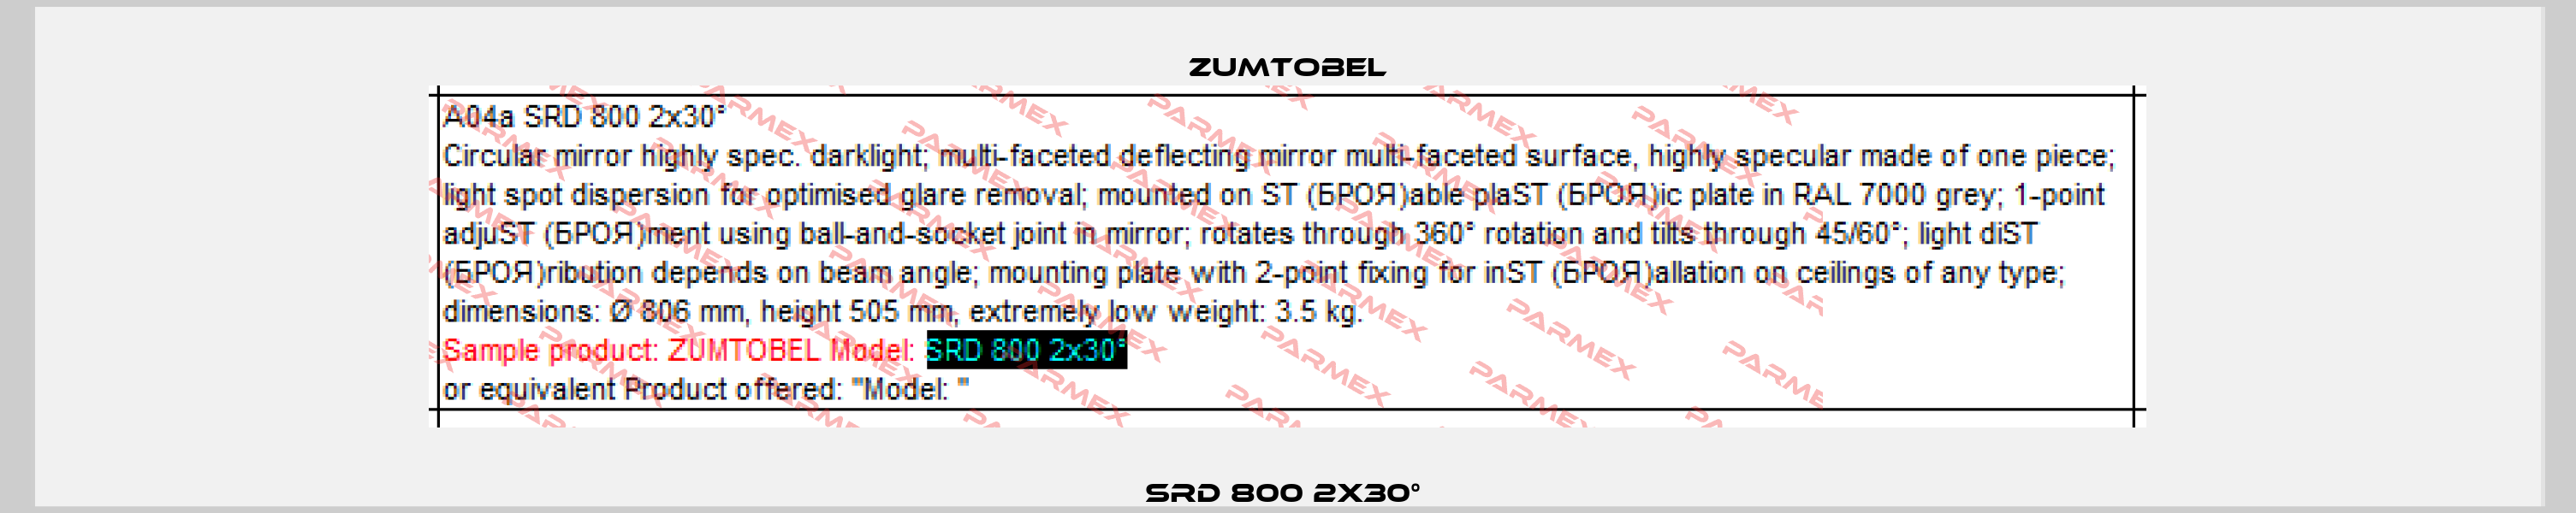 SRD 800 2x30°  Zumtobel